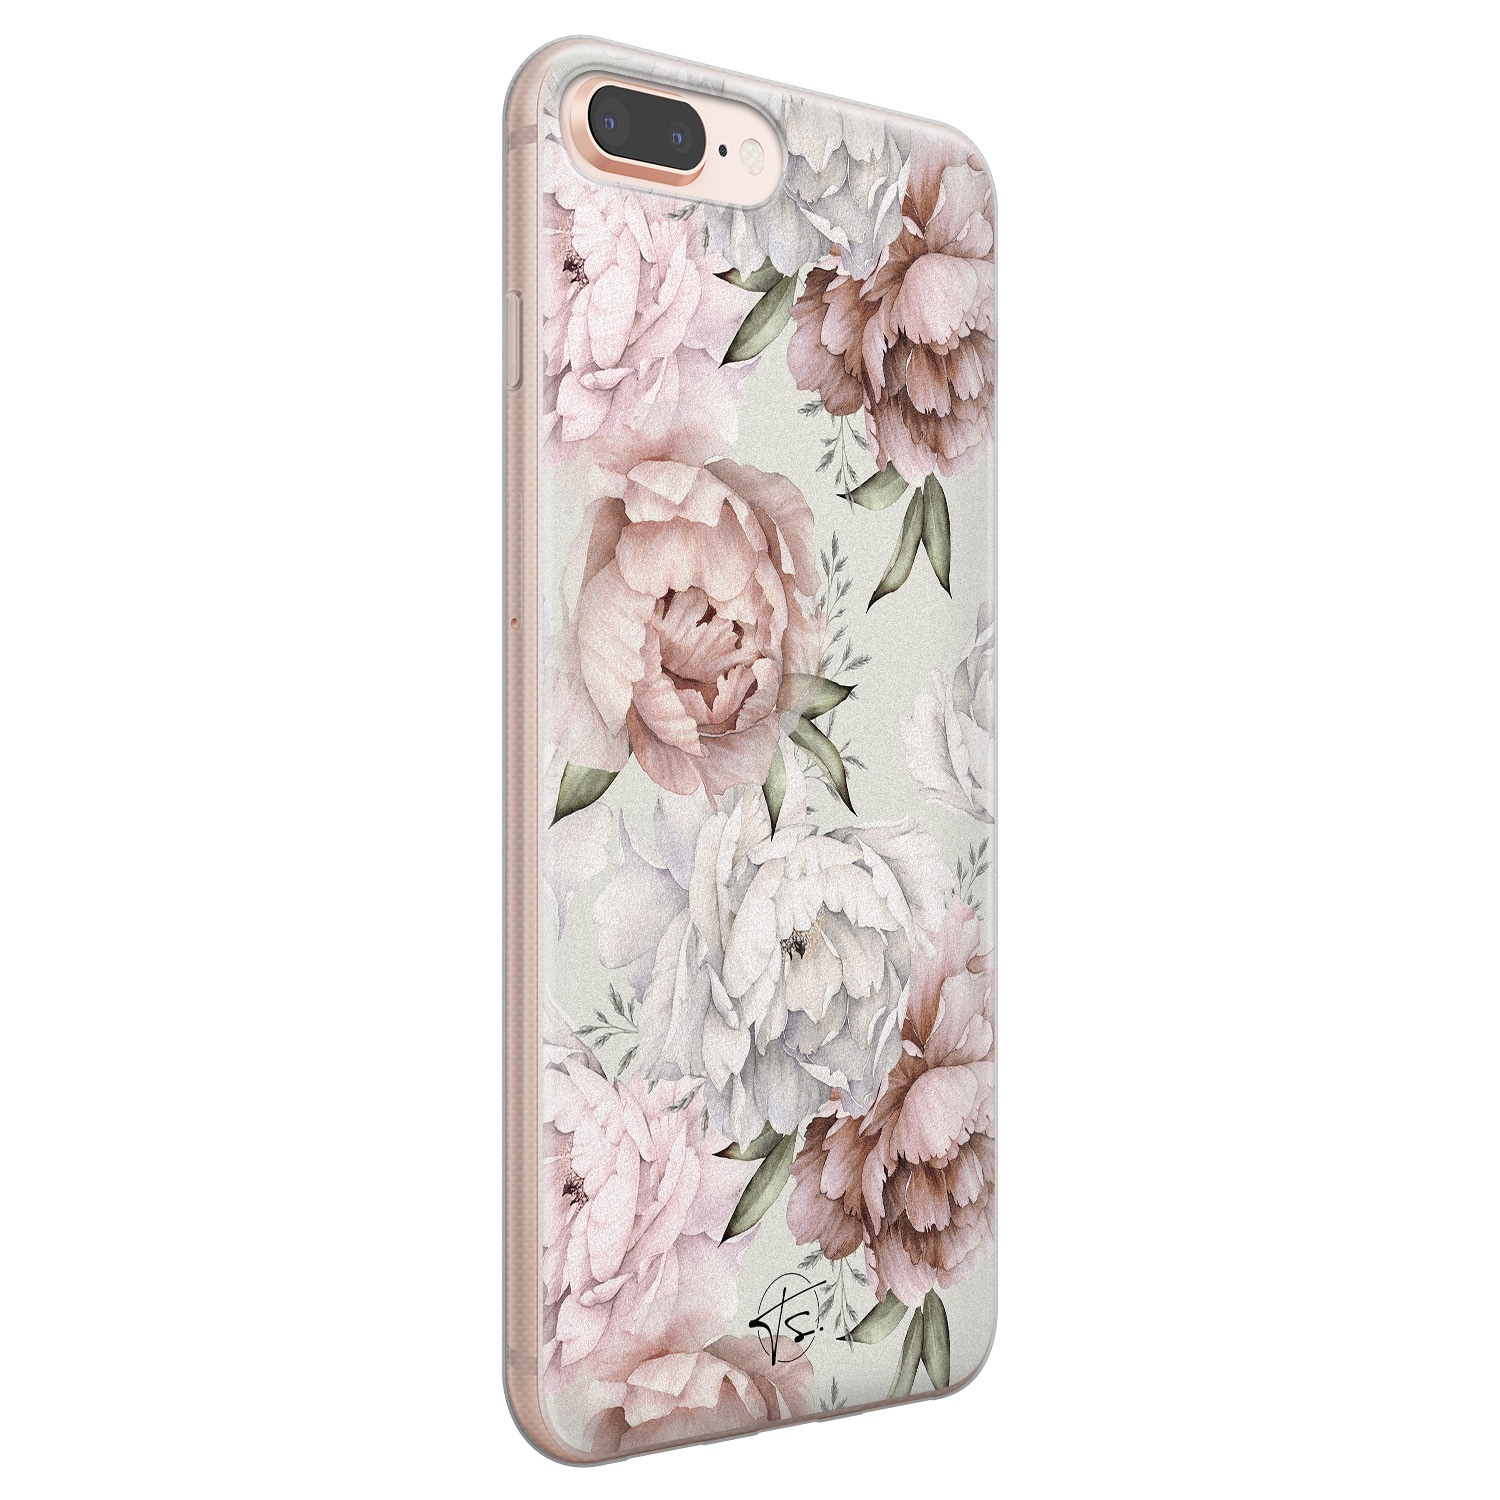 Telefoonhoesje Store iPhone 8 Plus/7 Plus siliconen hoesje - Classy flowers